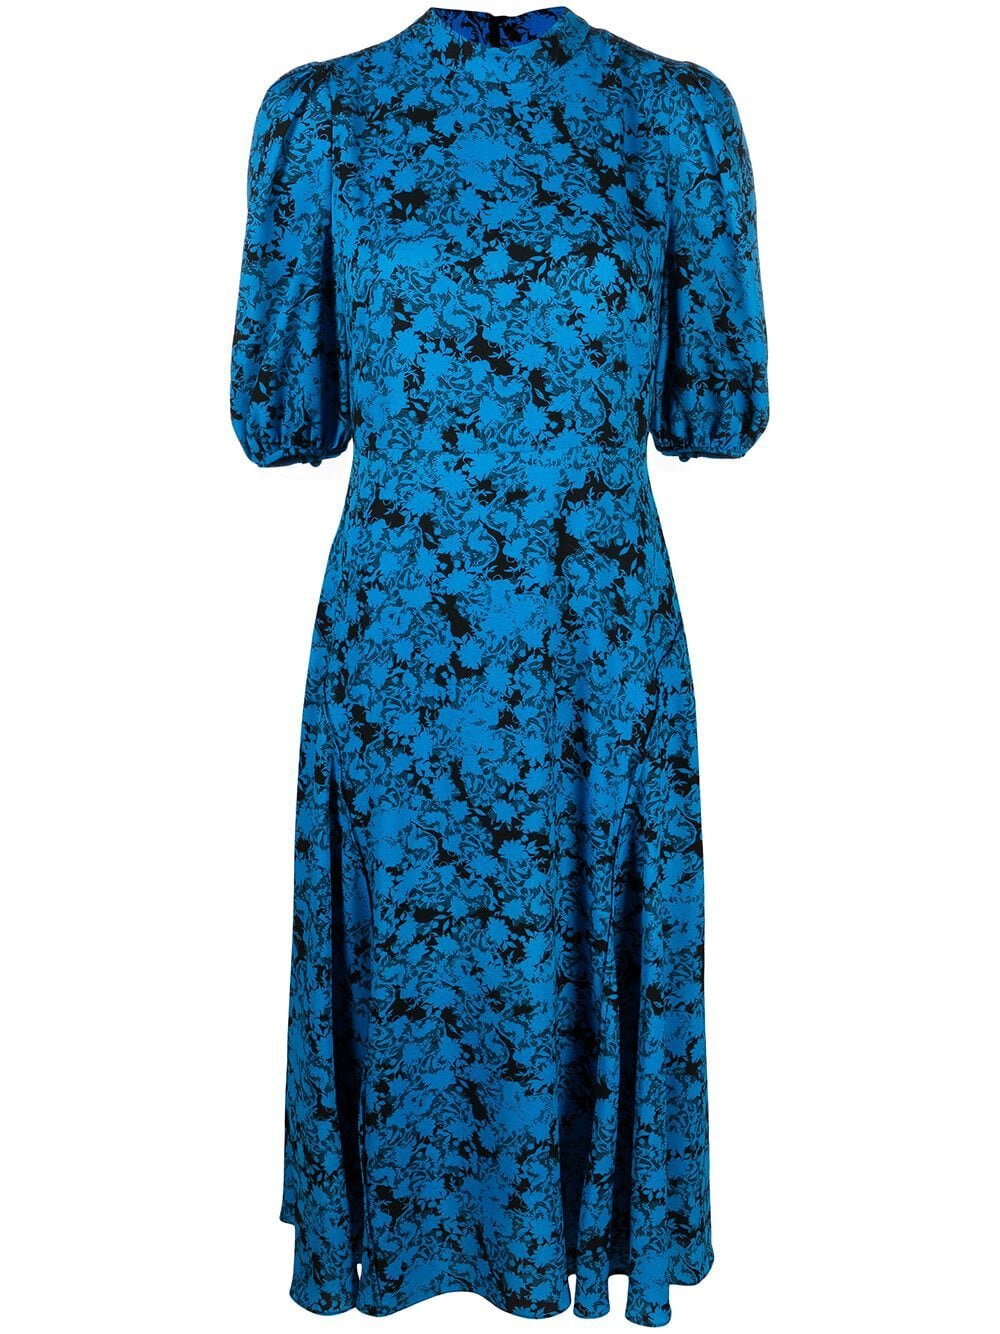 Diane von Furstenberg Nella Dress in Blue/Black — UFO No More